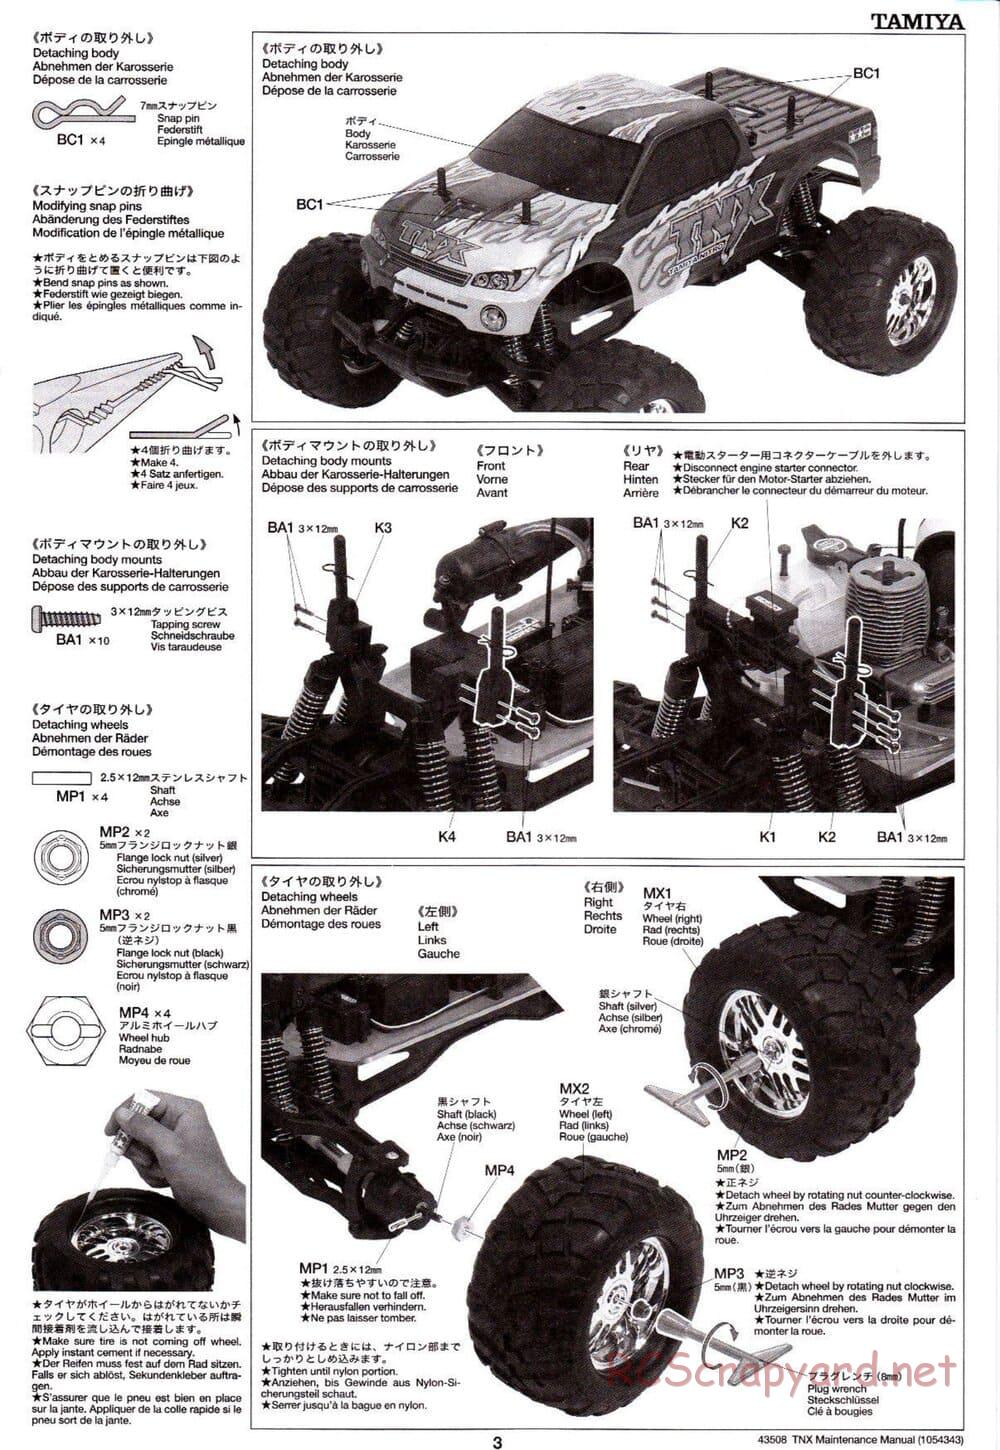 Tamiya - TNX - Maintenance Manual - Page 3